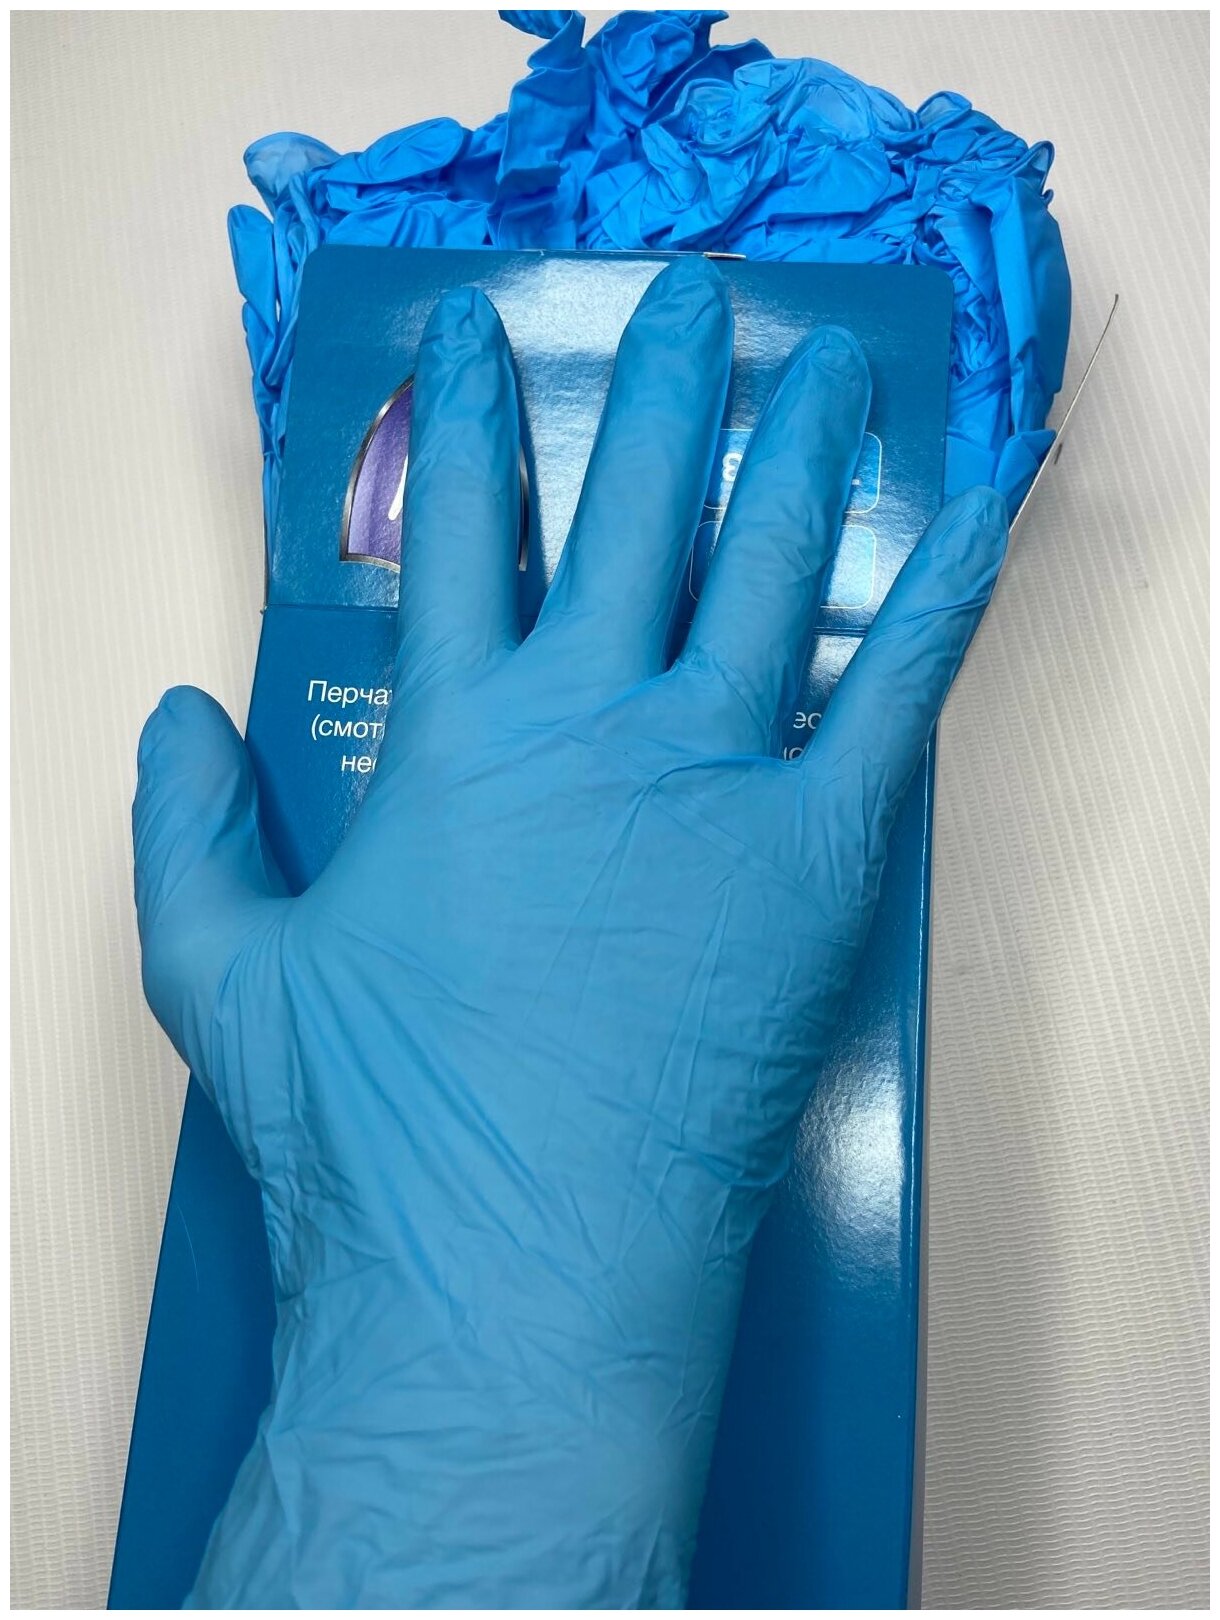 Перчатки нитриловые голубые XS (200 шт)